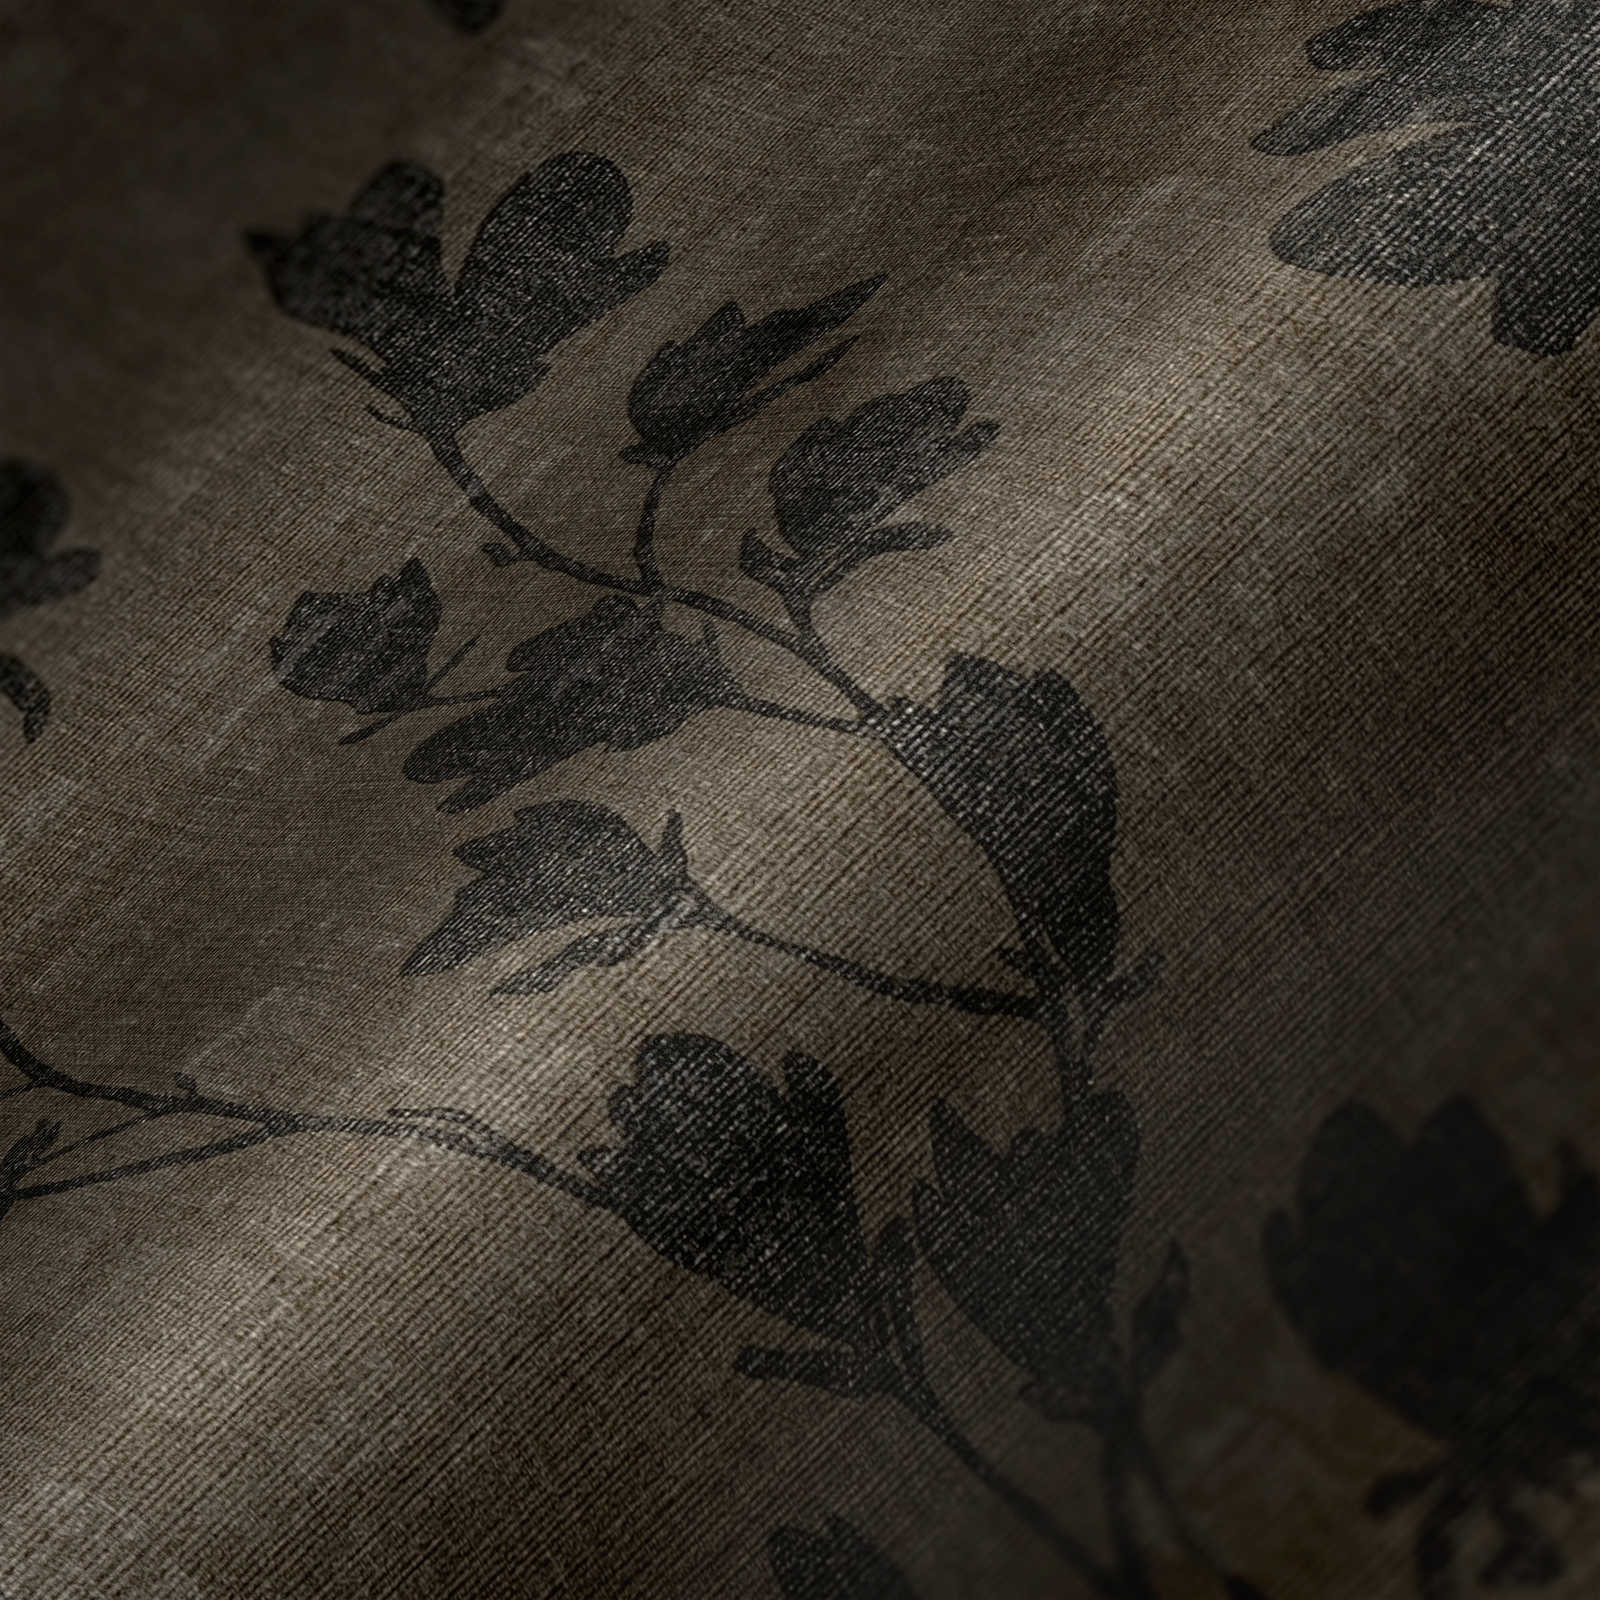             Papel pintado no tejido con diseño de zarcillos de hojas - marrón, negro
        